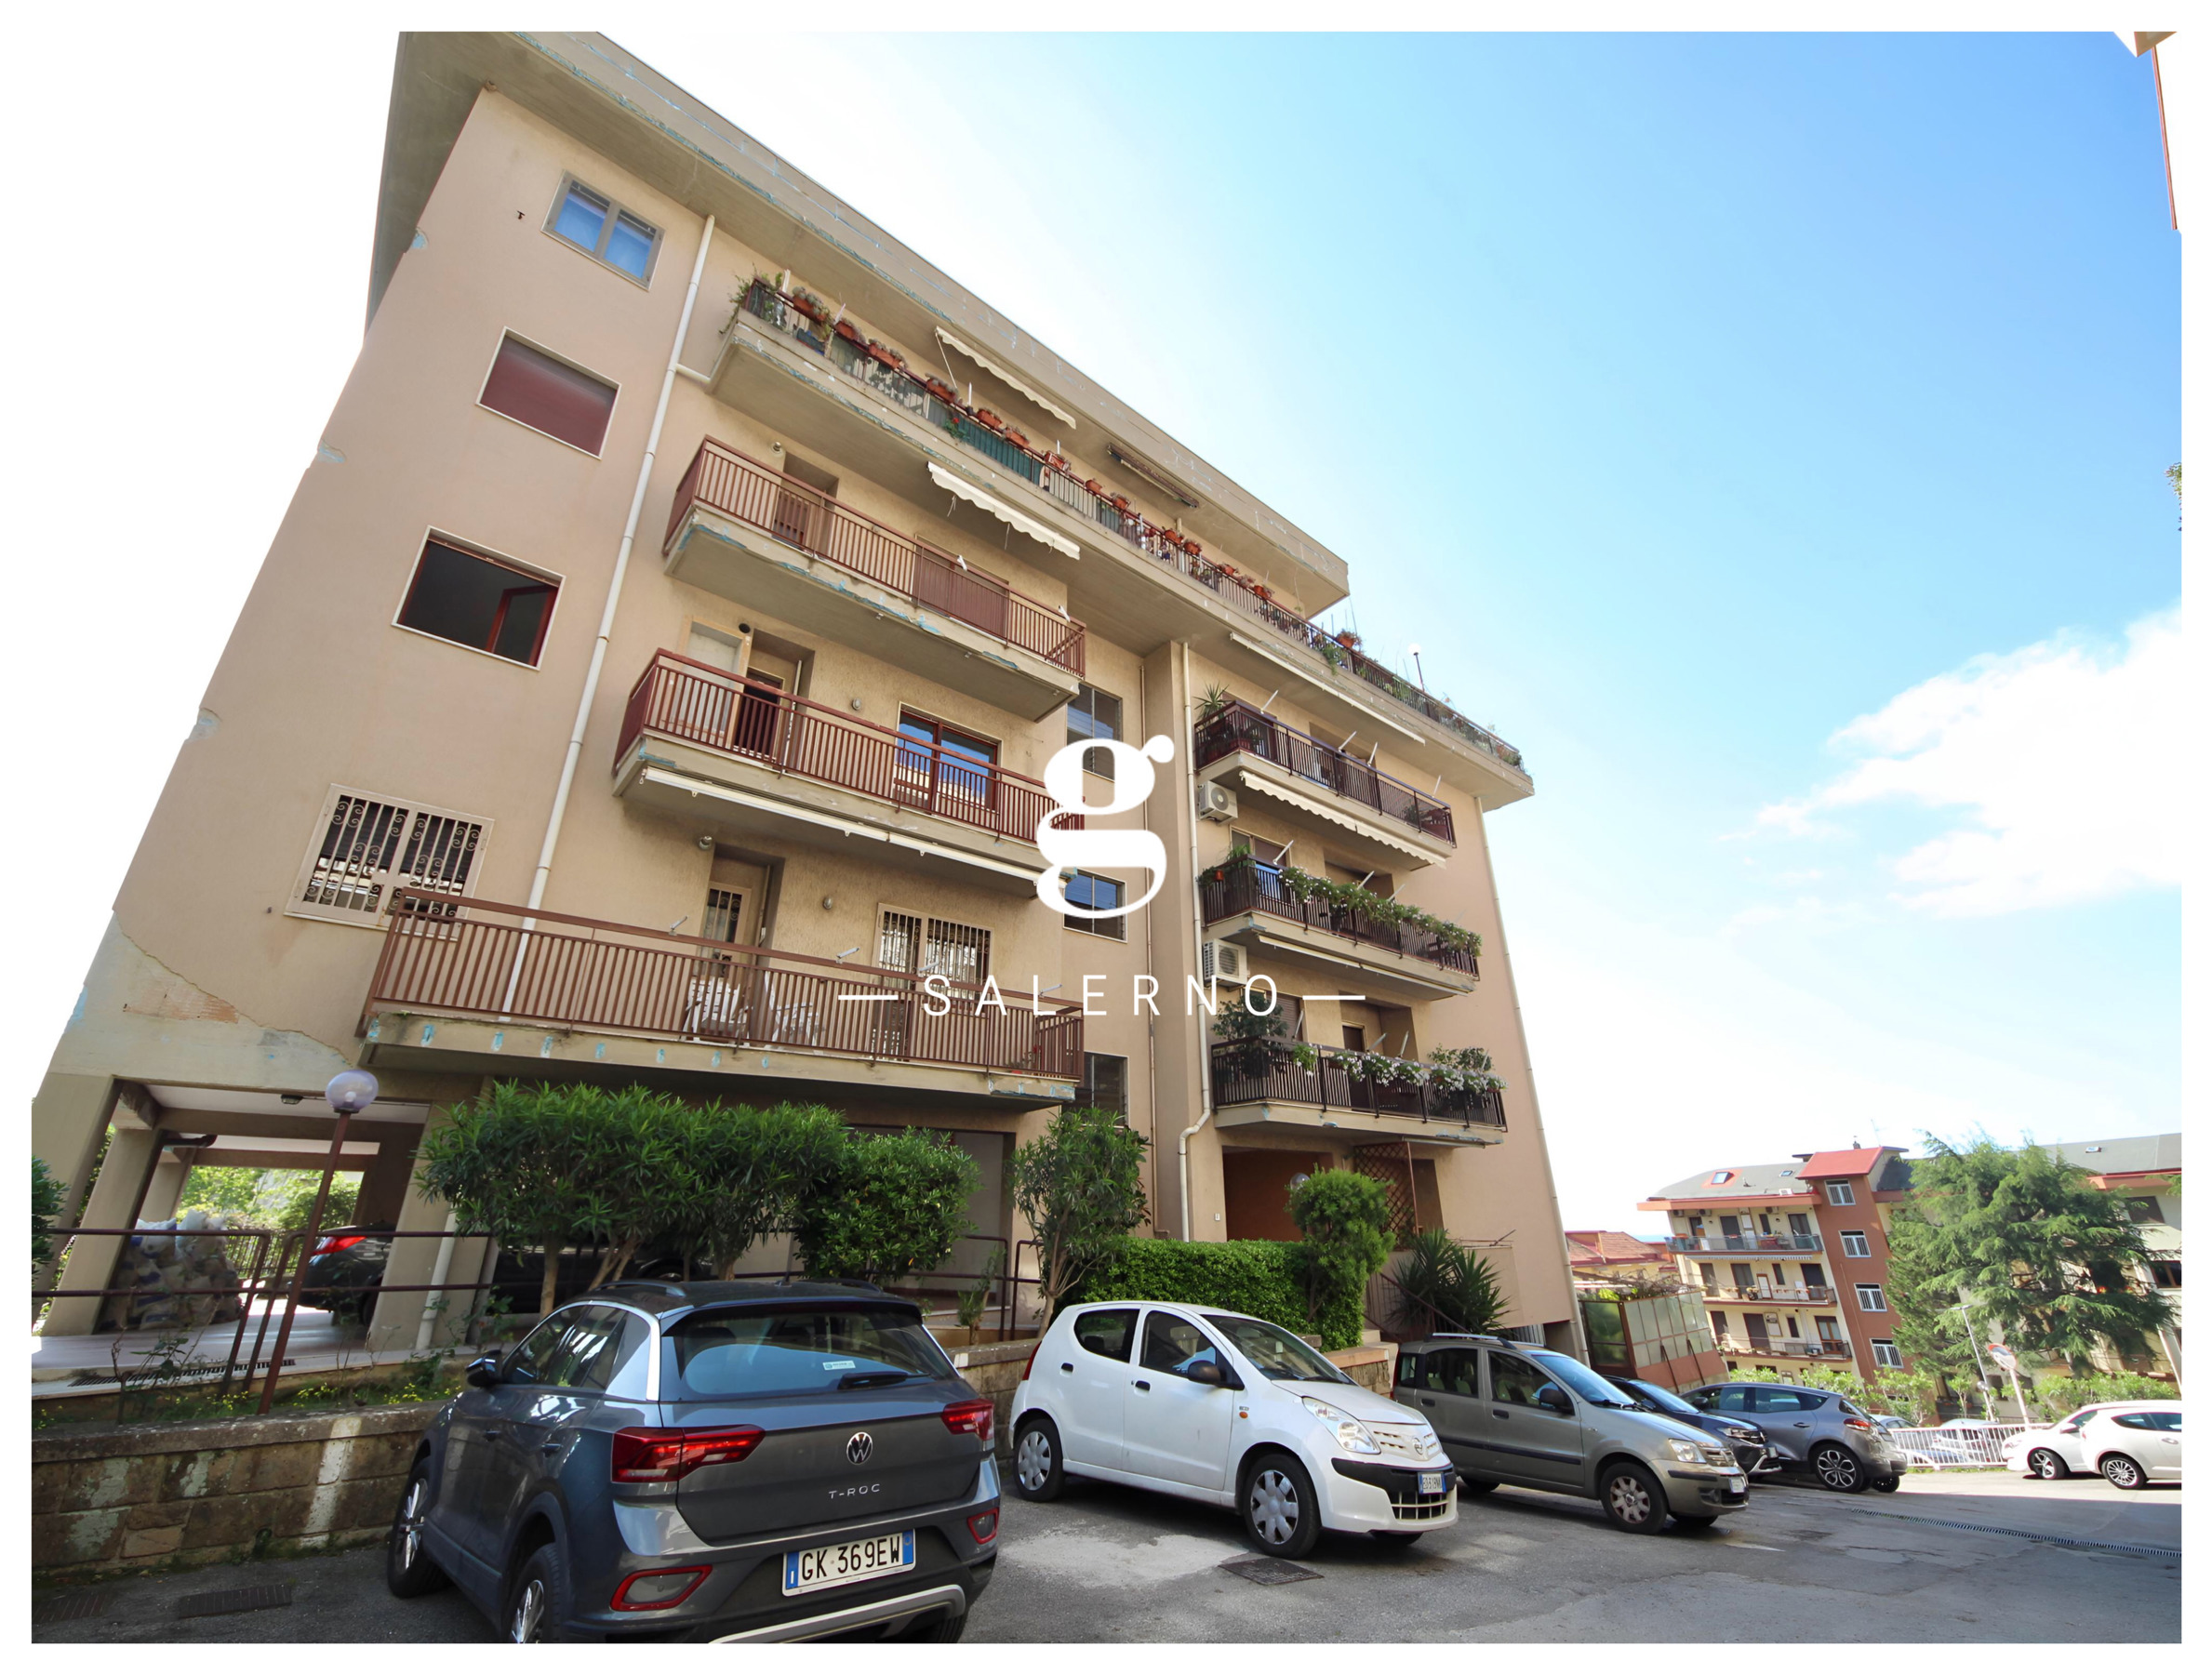 Appartamento arredato in affitto a Salerno